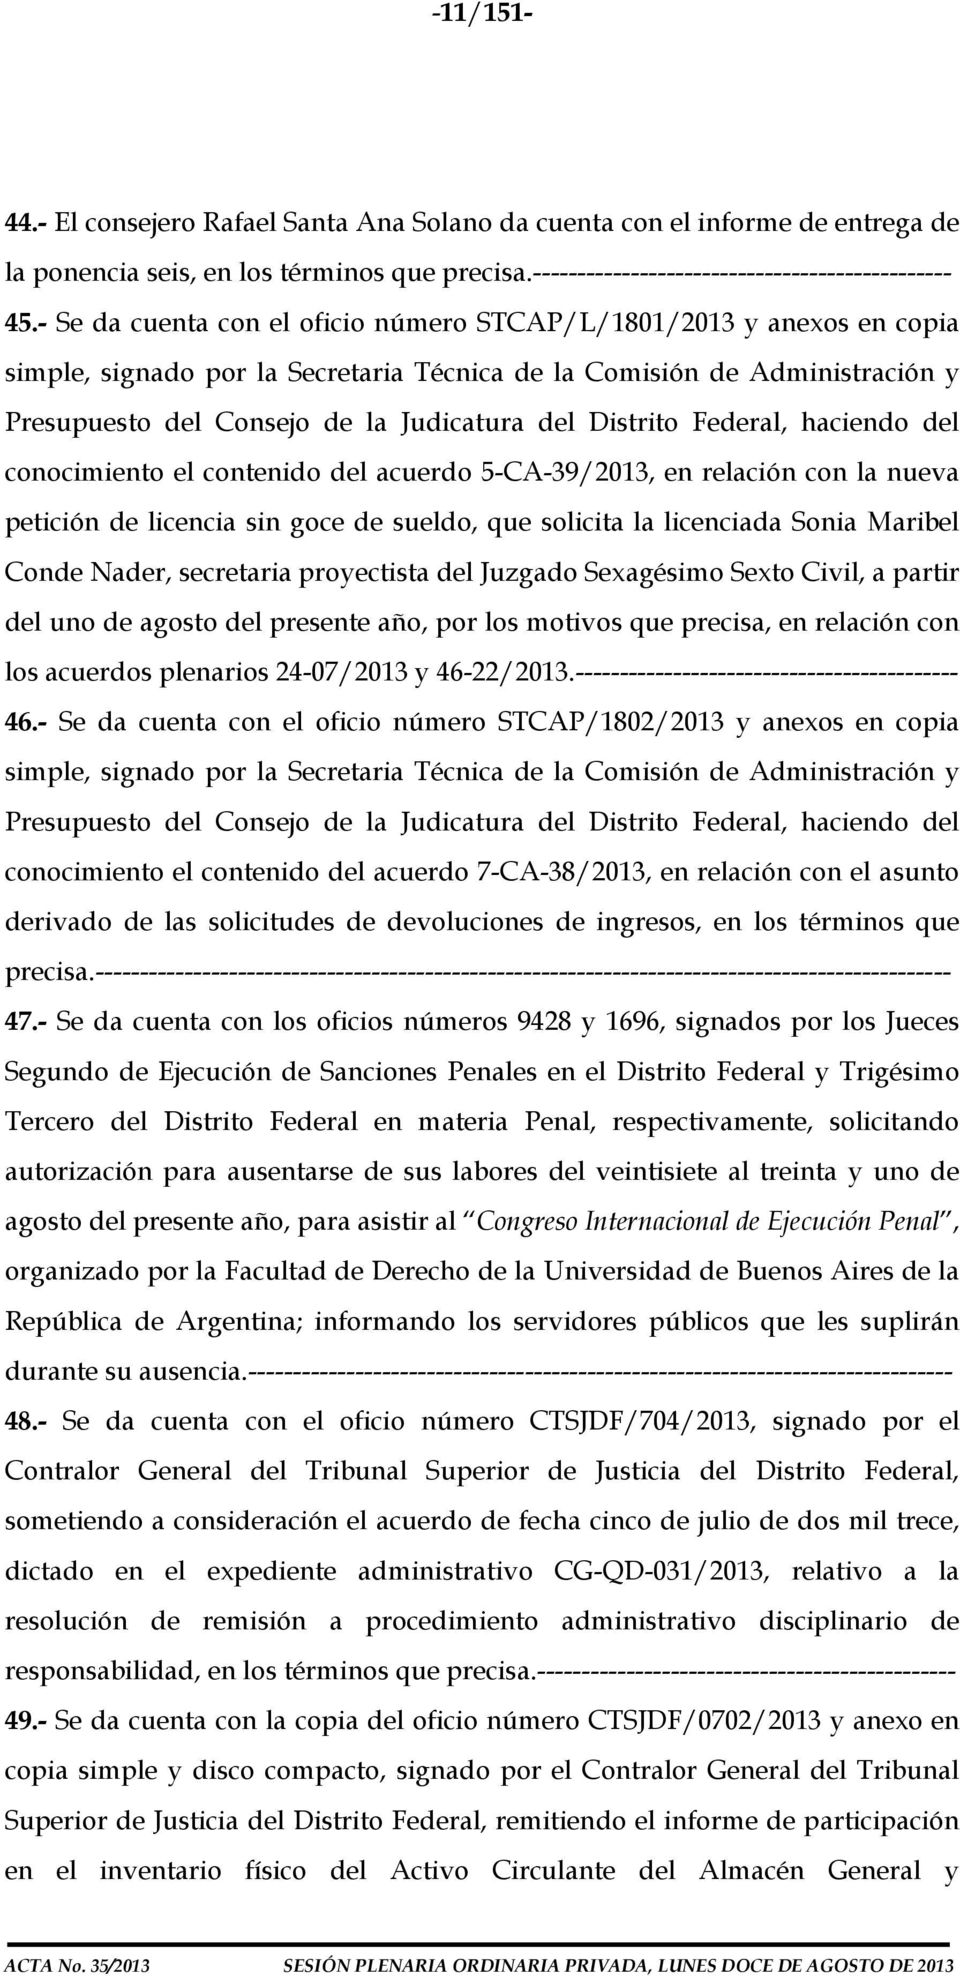 Distrito Federal, haciendo del conocimiento el contenido del acuerdo 5-CA-39/2013, en relación con la nueva petición de licencia sin goce de sueldo, que solicita la licenciada Sonia Maribel Conde